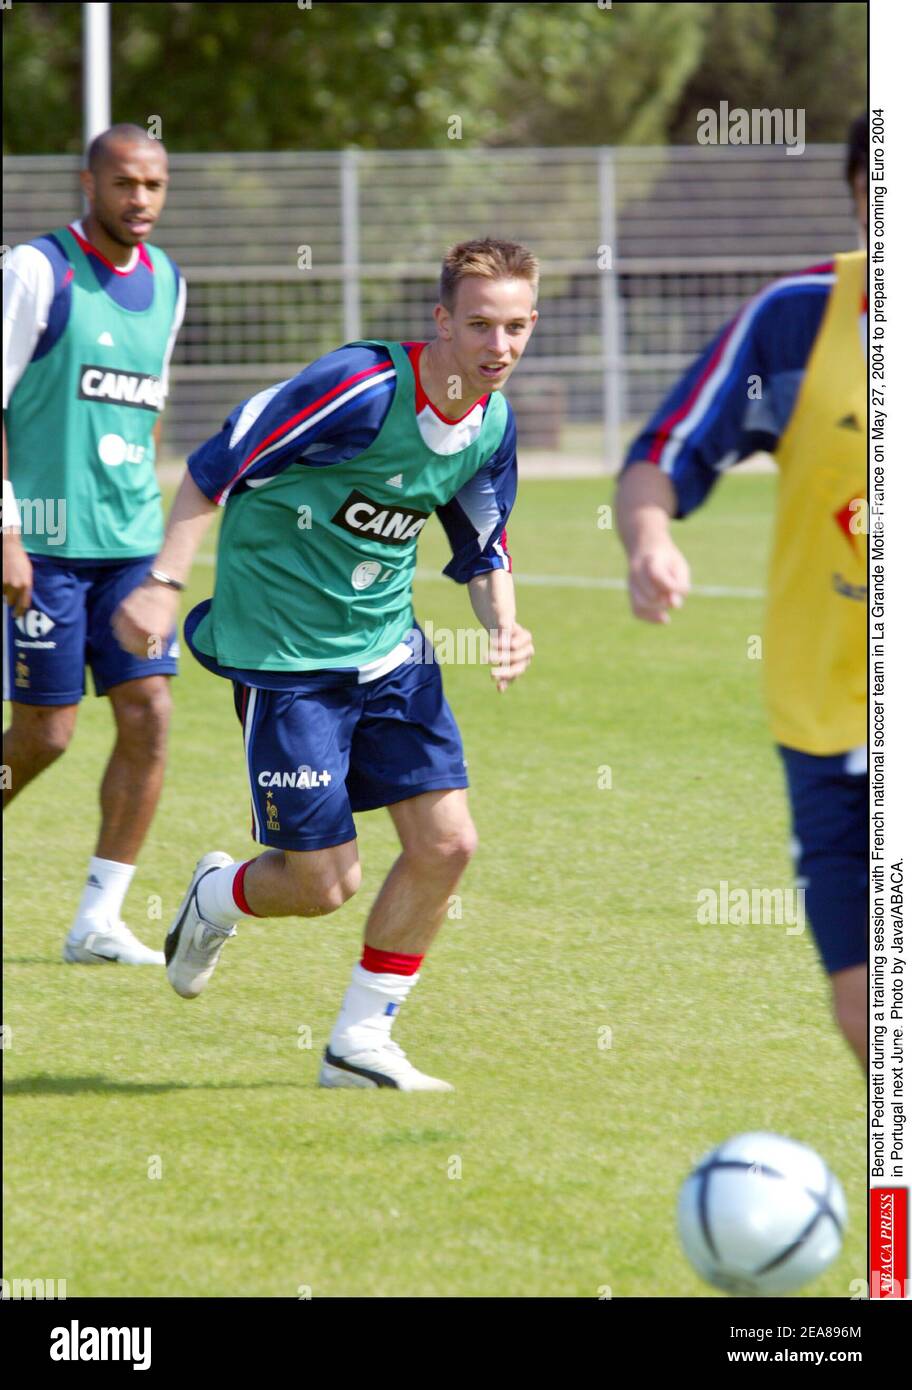 Benoit Pedretti bei einem Training mit der französischen Fußballnationalmannschaft in La Grande Motte-France am 27. Mai 2004, um die kommende Euro 2004 in Portugal im kommenden Juni vorzubereiten. Foto von Java/ABACA. Stockfoto